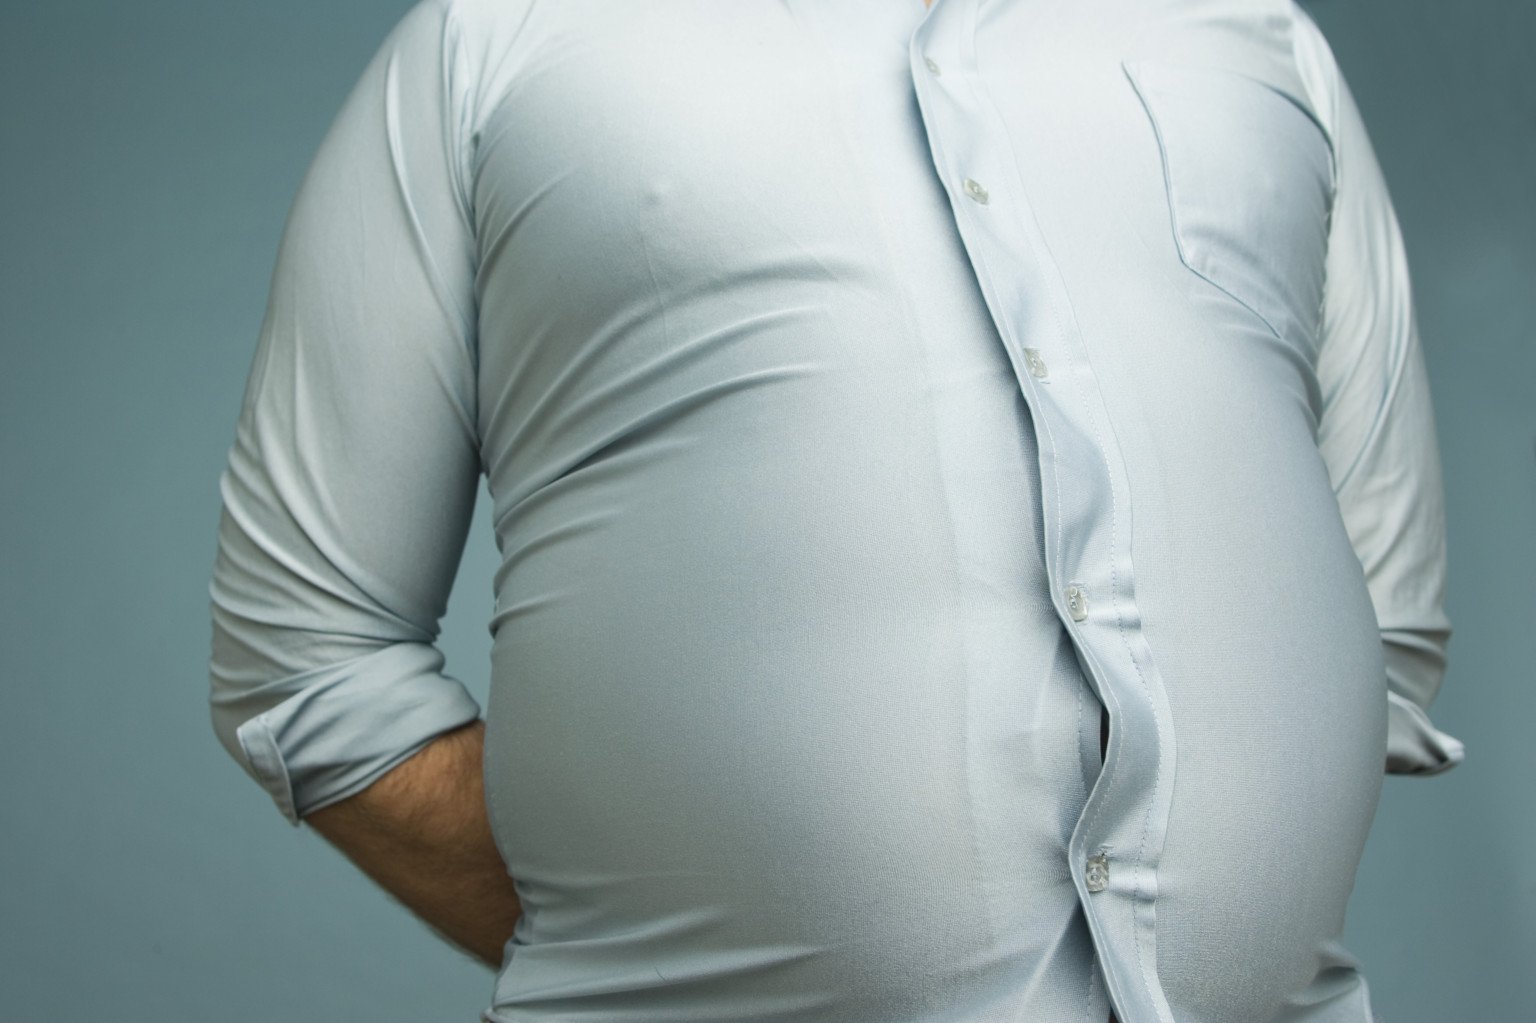 5 strategii pentru a scapa de grasimea de pe abdomen - Nutriblog